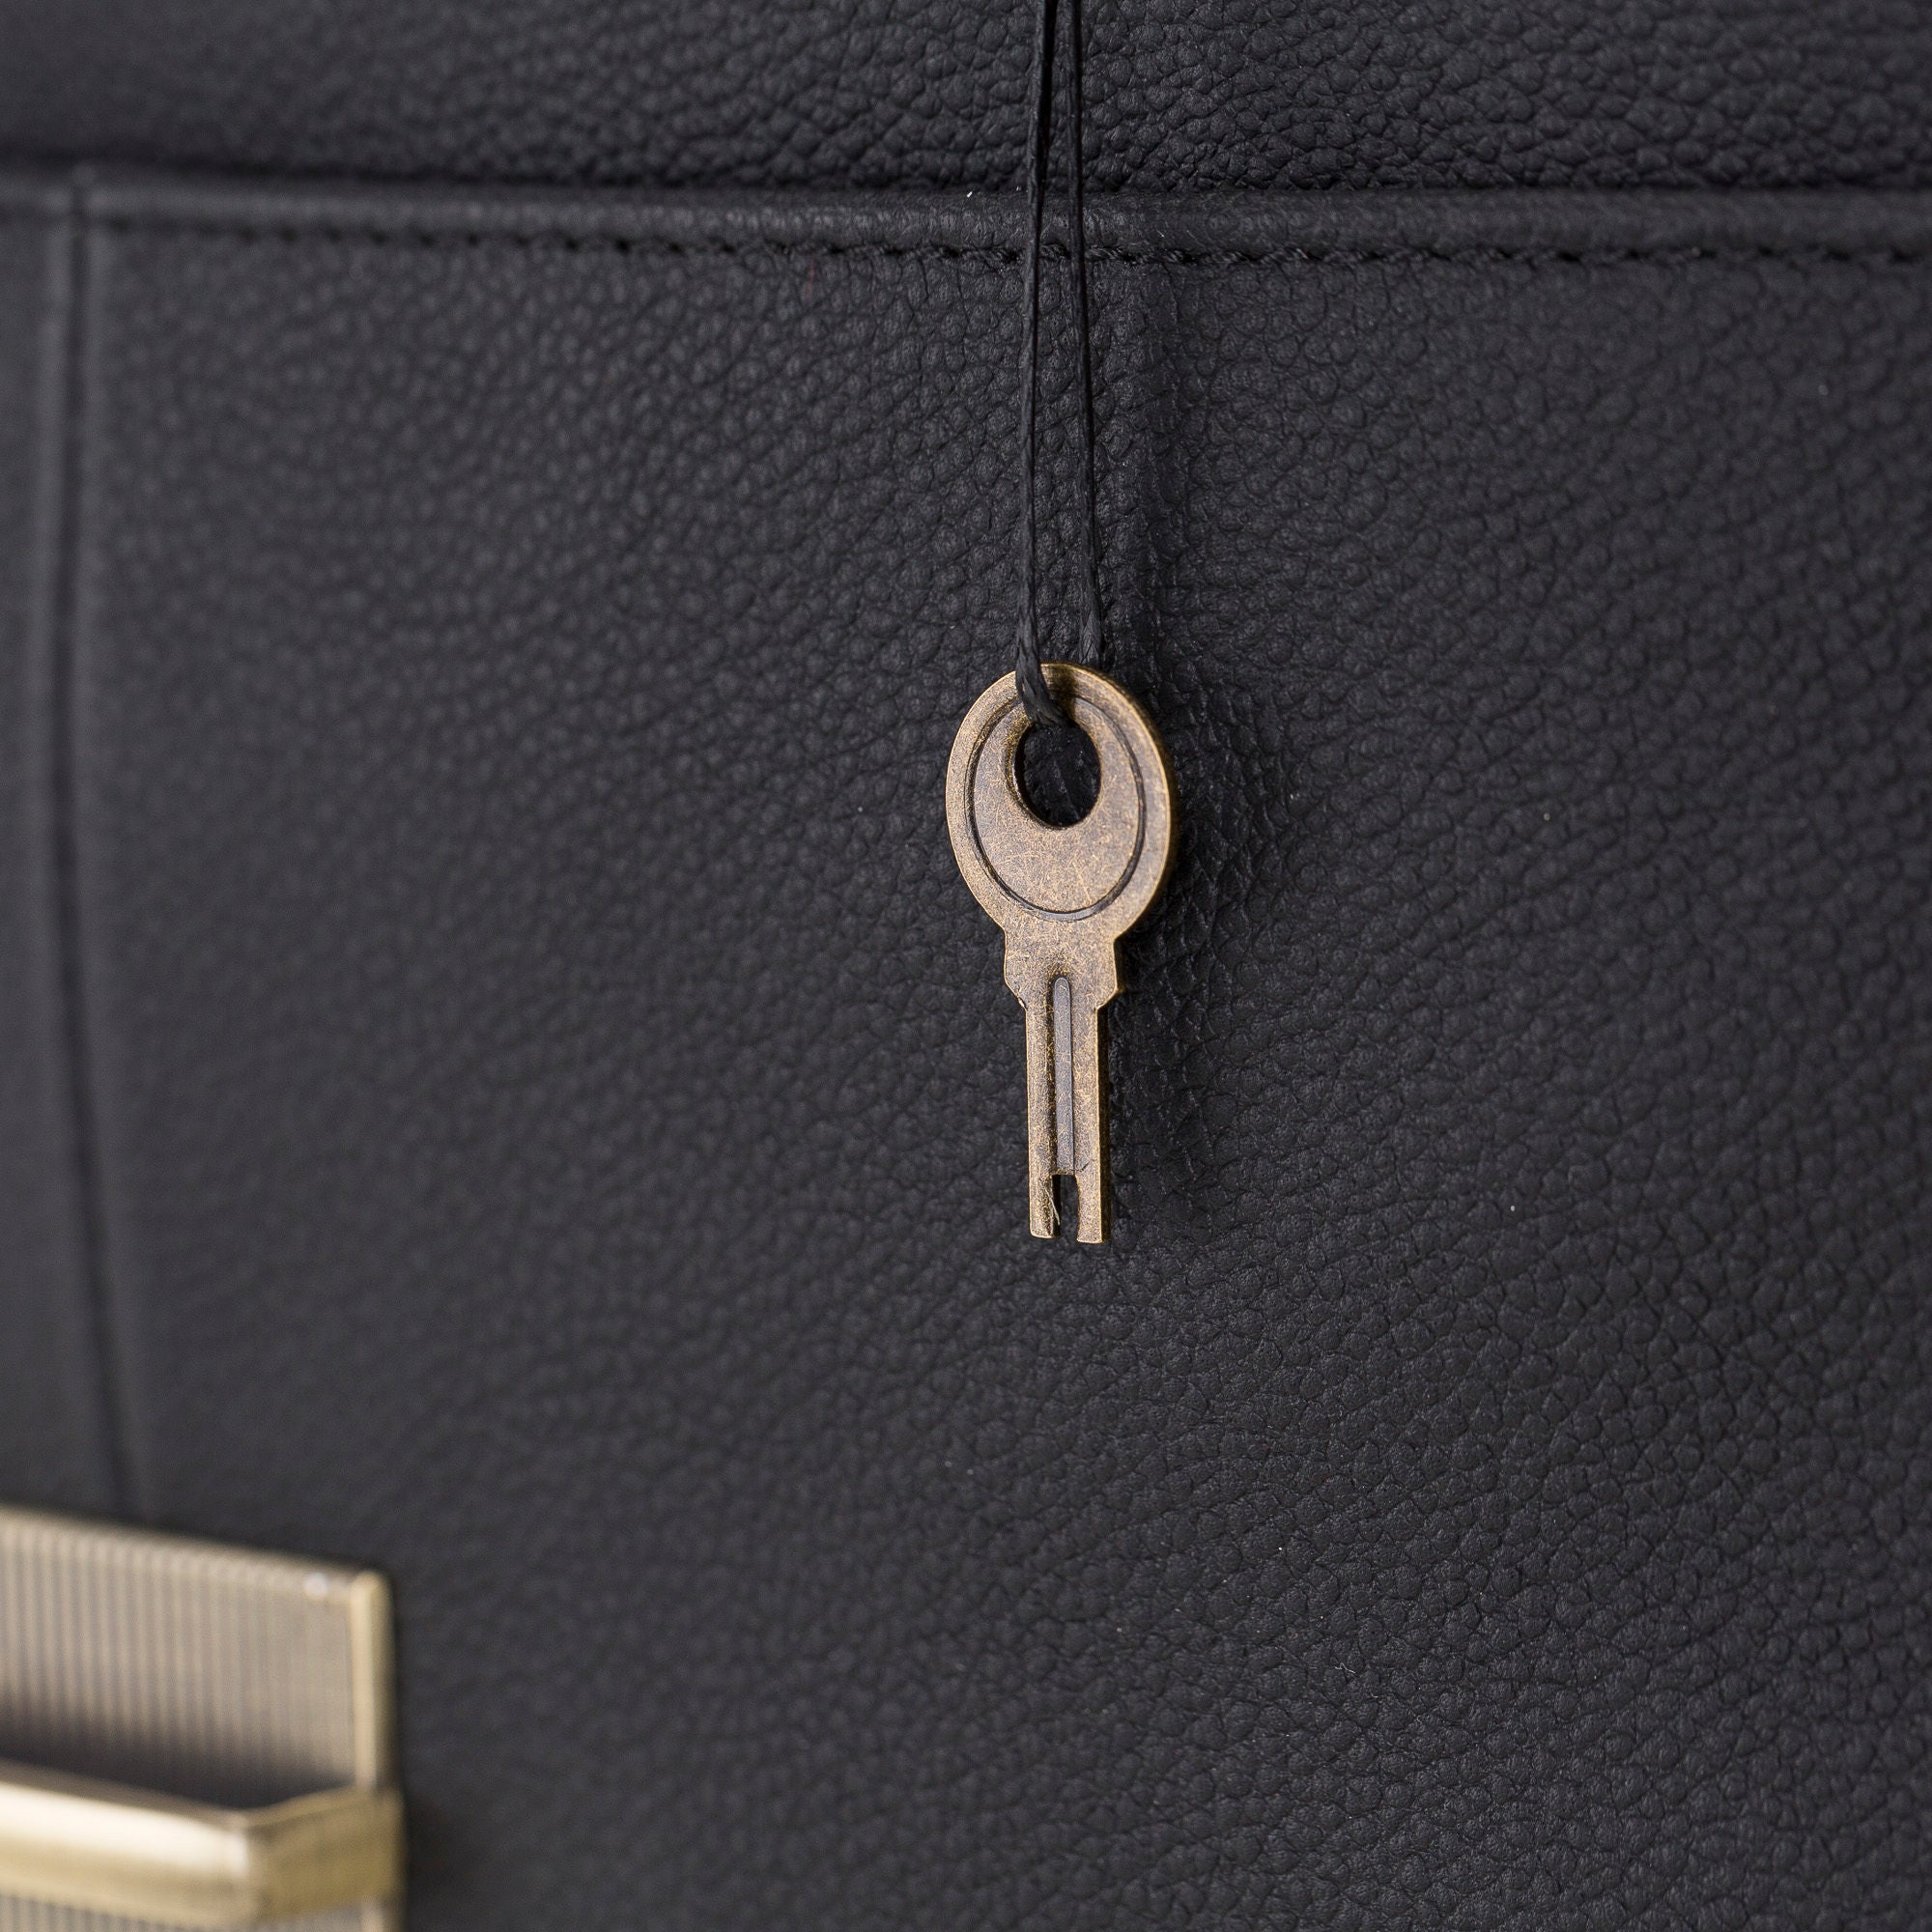 Victor Briefcase Leather Bag - Laptop Bag